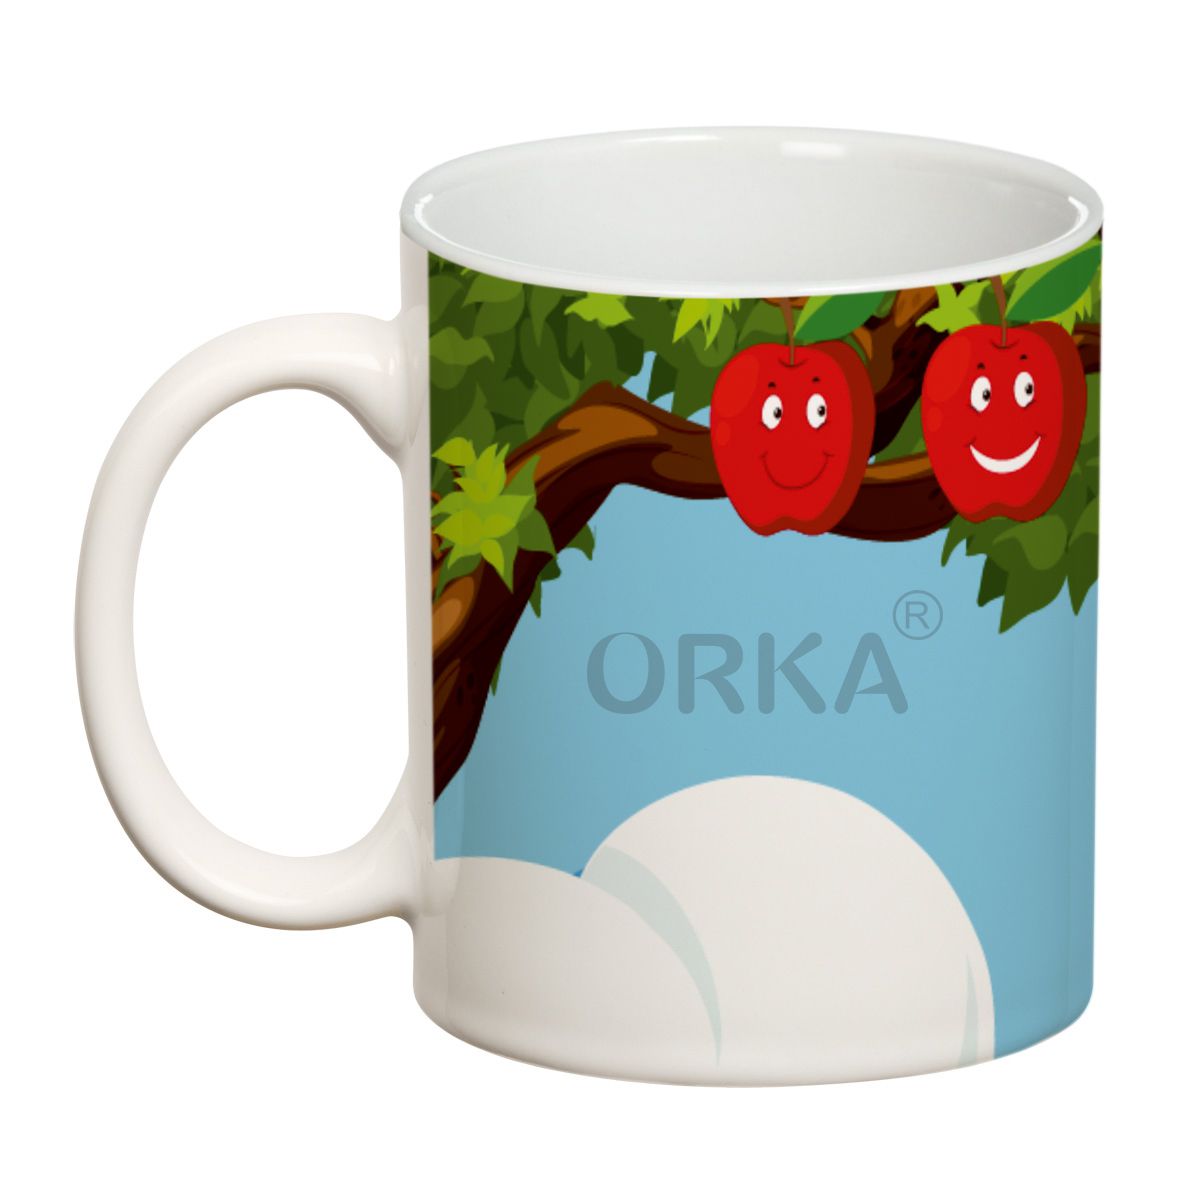 ORKA Coffee Mug Nature Printed(Apple) Theme 11 Oz   